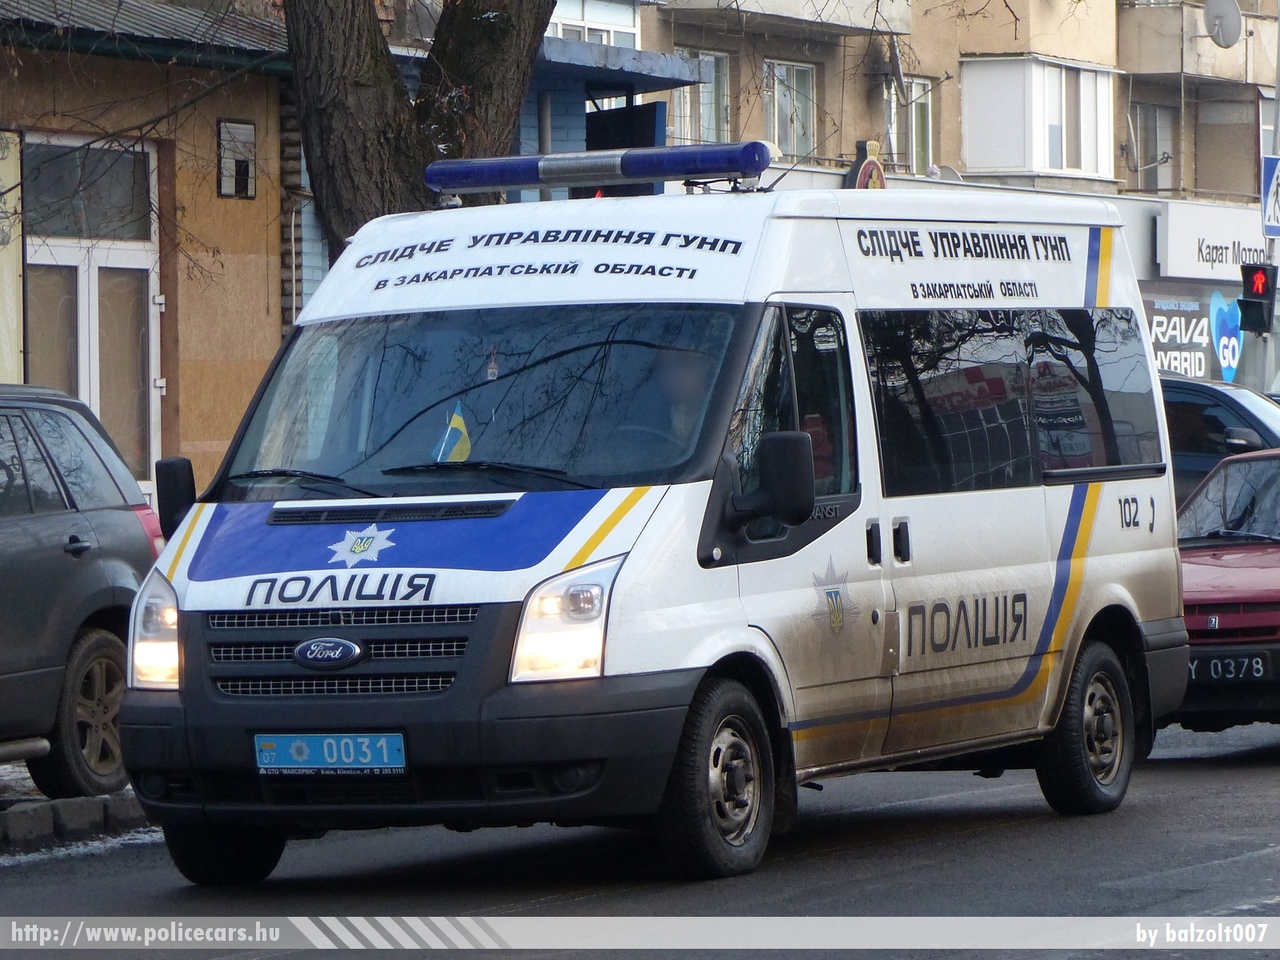 Ford Transit, fotó: balzolt007
Keywords: ukrán Ukrajna rendőr rendőrautó rendőrség ukrainian Ukraine police policecar